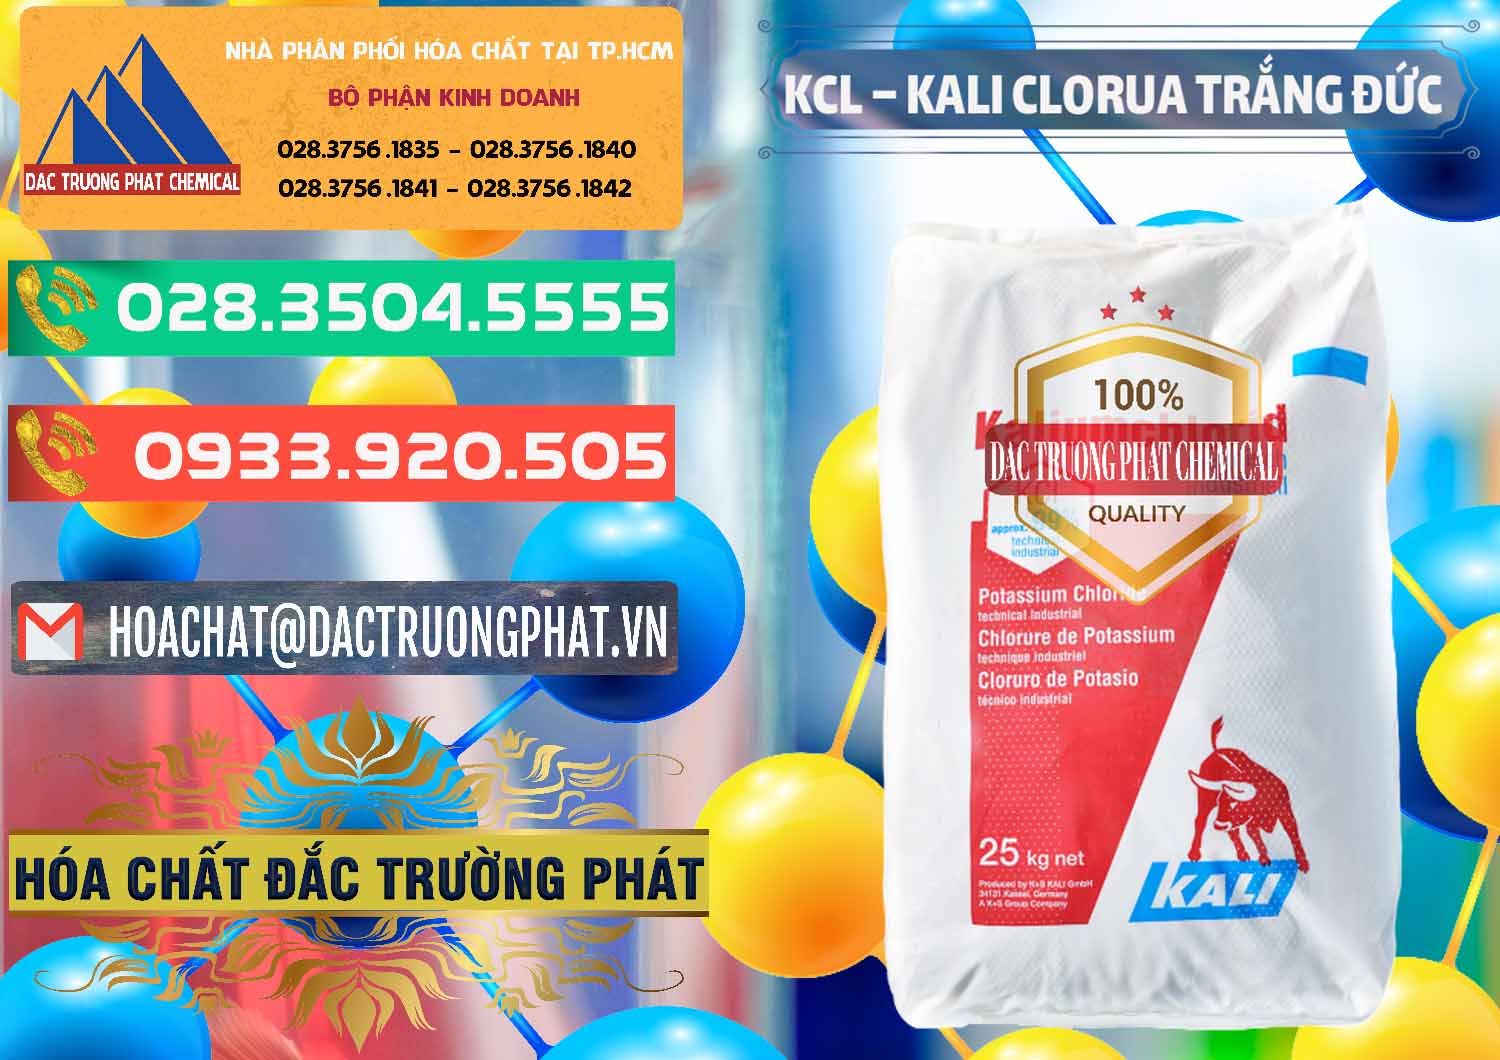 Chuyên phân phối & bán KCL – Kali Clorua Trắng Đức Germany - 0086 - Cty chuyên cung cấp ( nhập khẩu ) hóa chất tại TP.HCM - congtyhoachat.com.vn